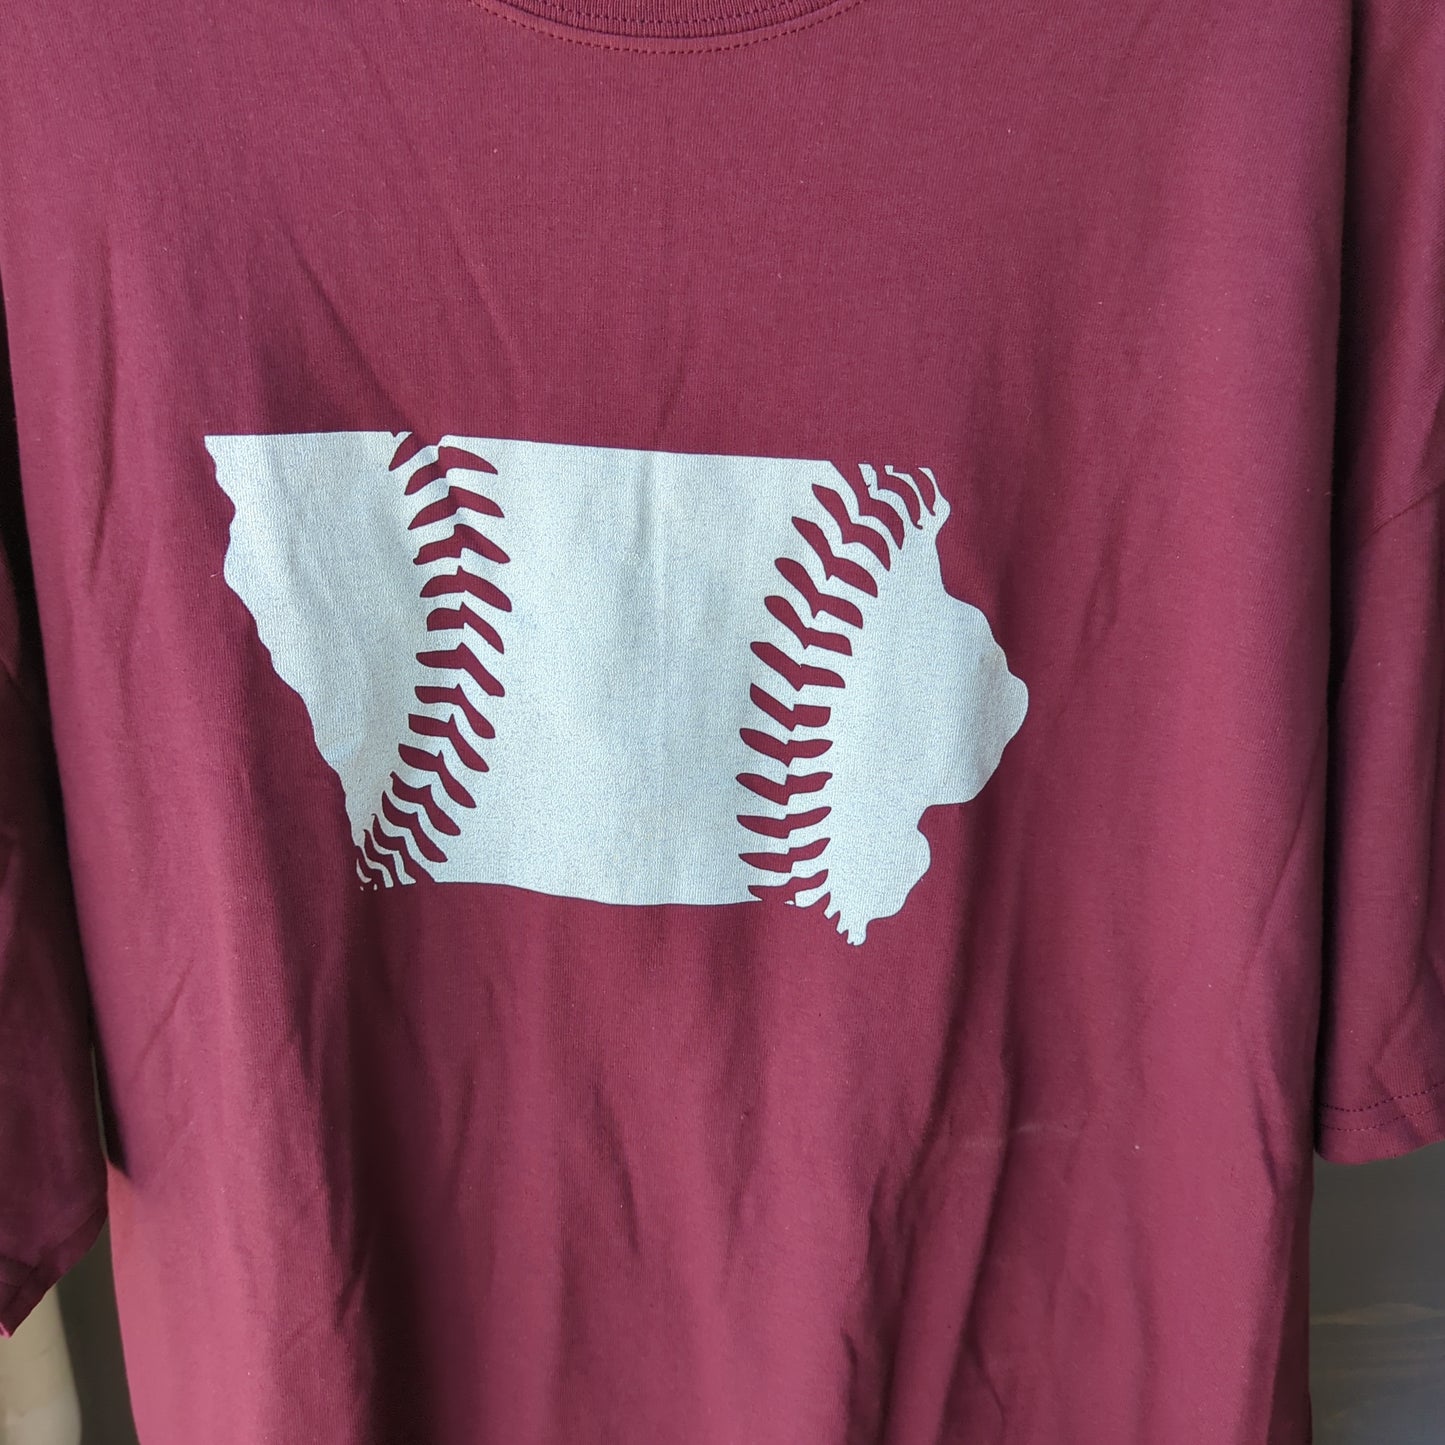 State t-shirt stitching